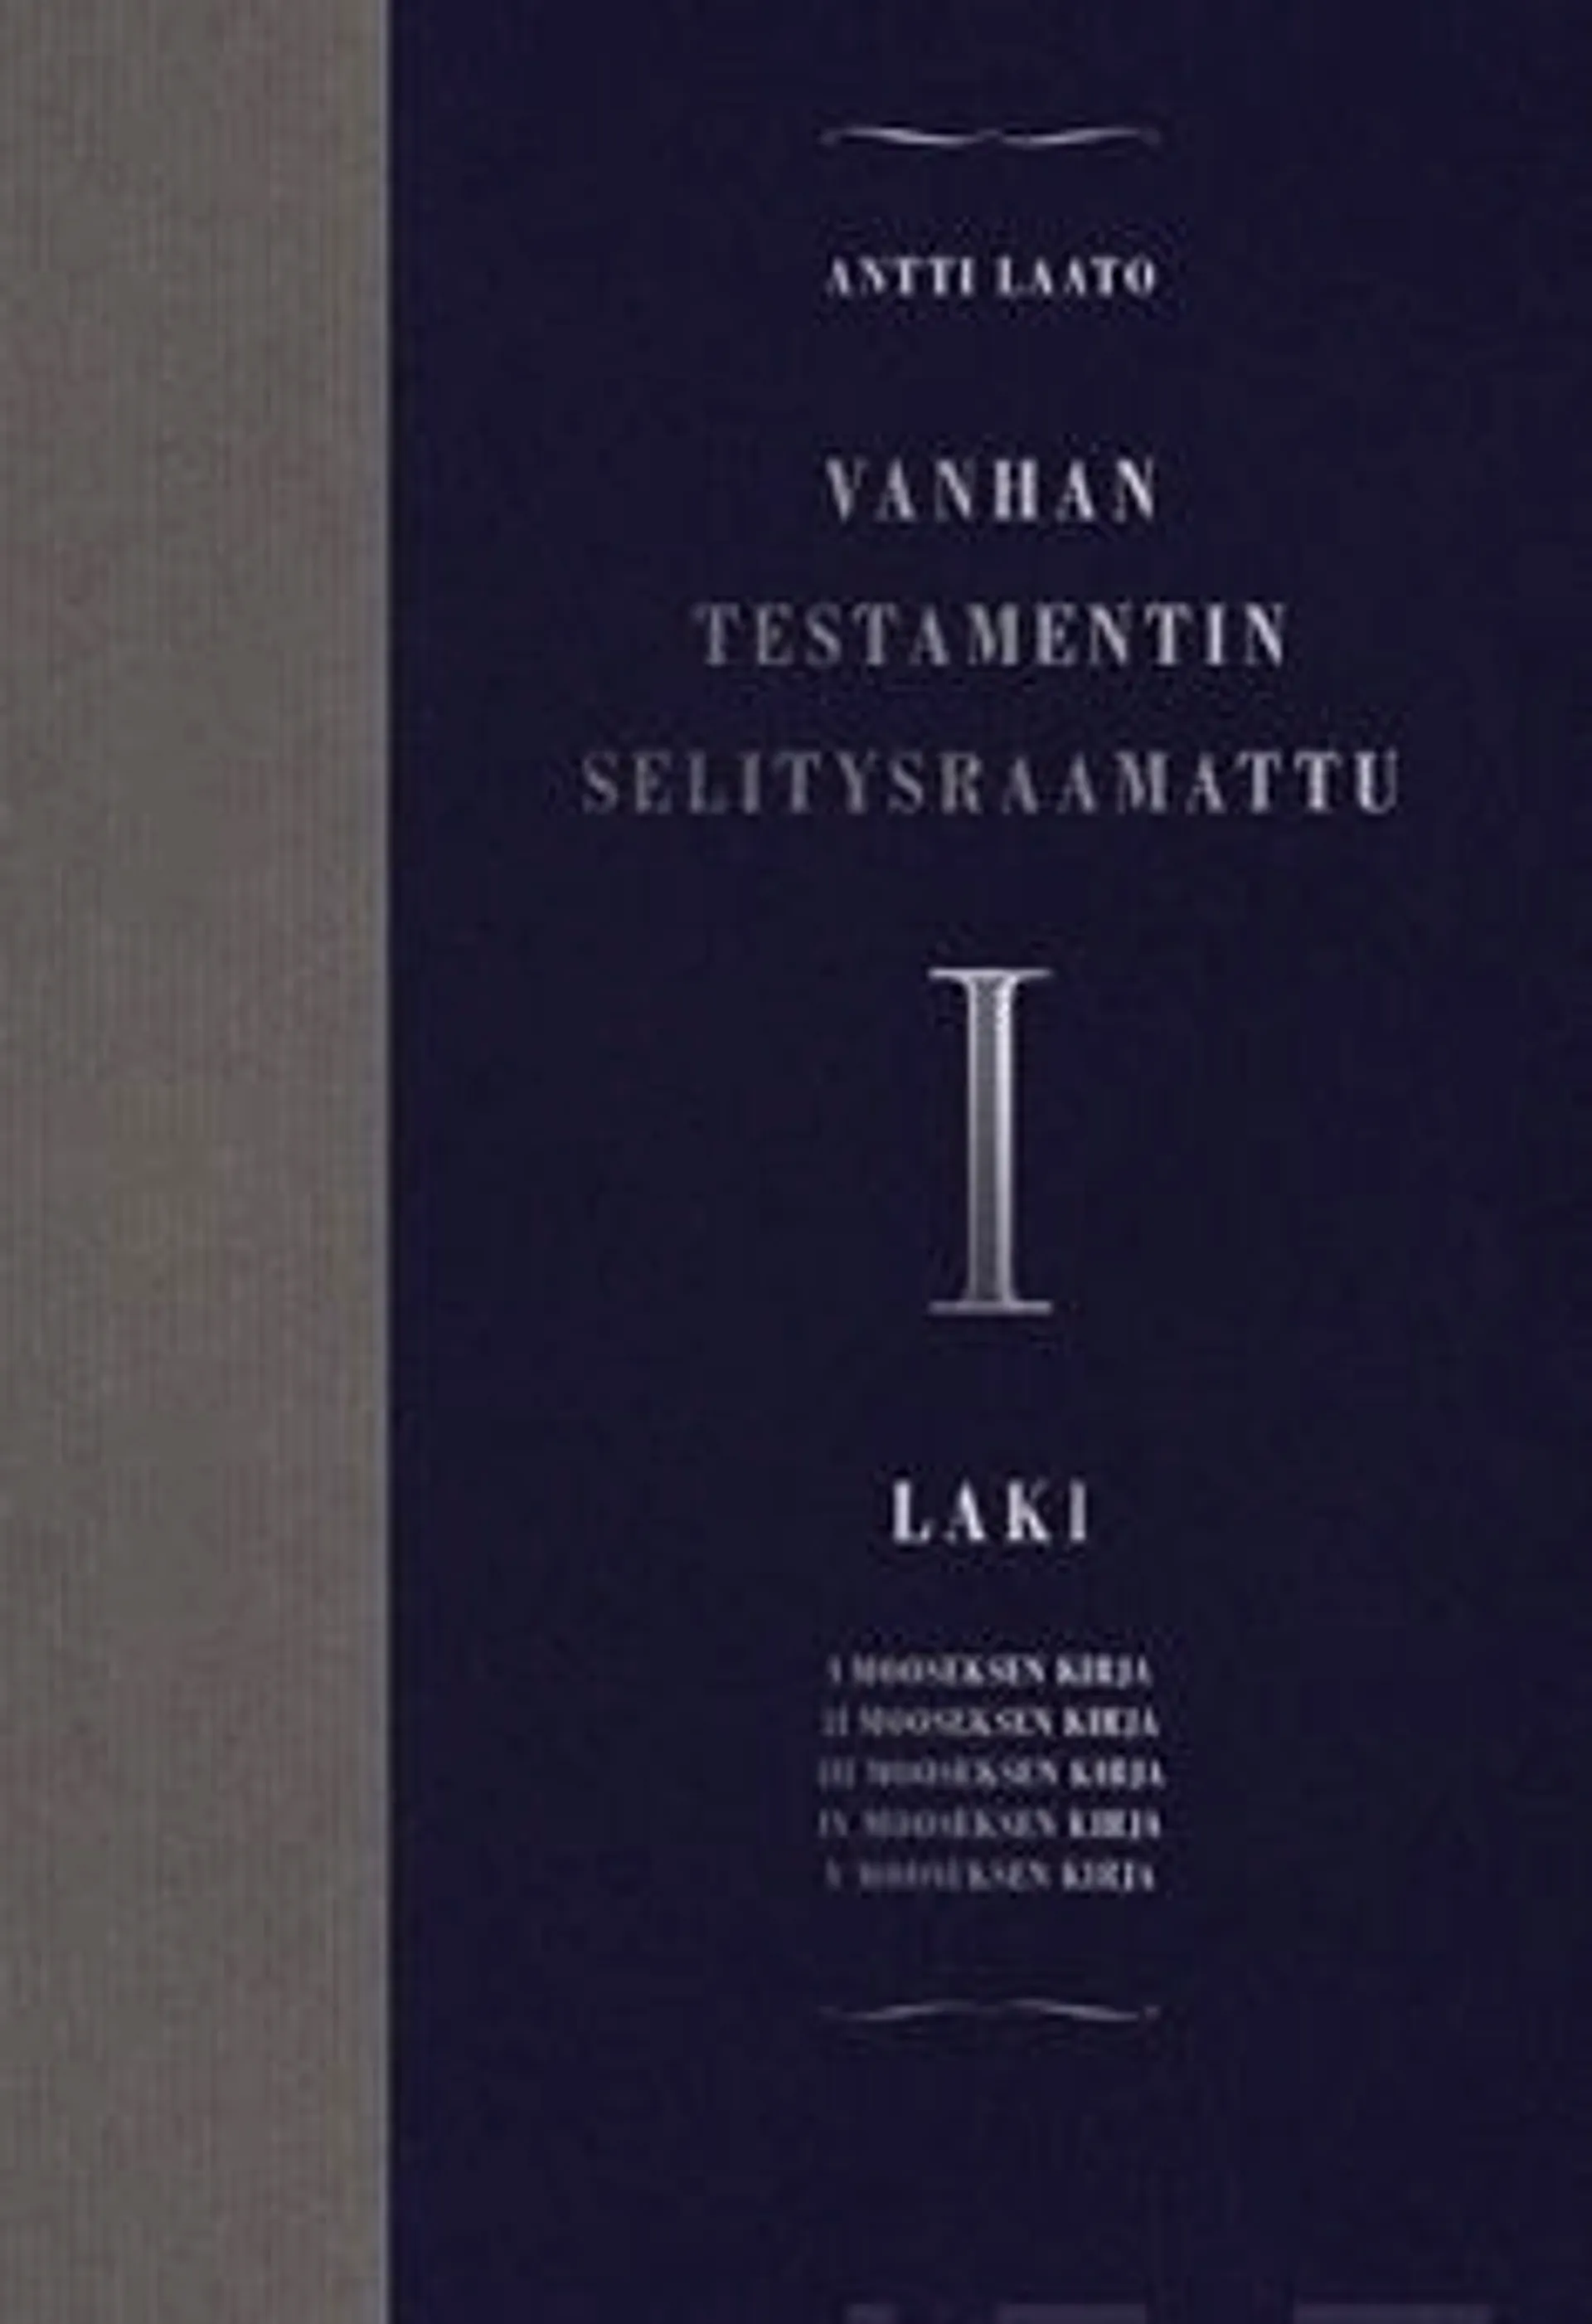 Laato, Vanhan testamentin selitysraamattu I